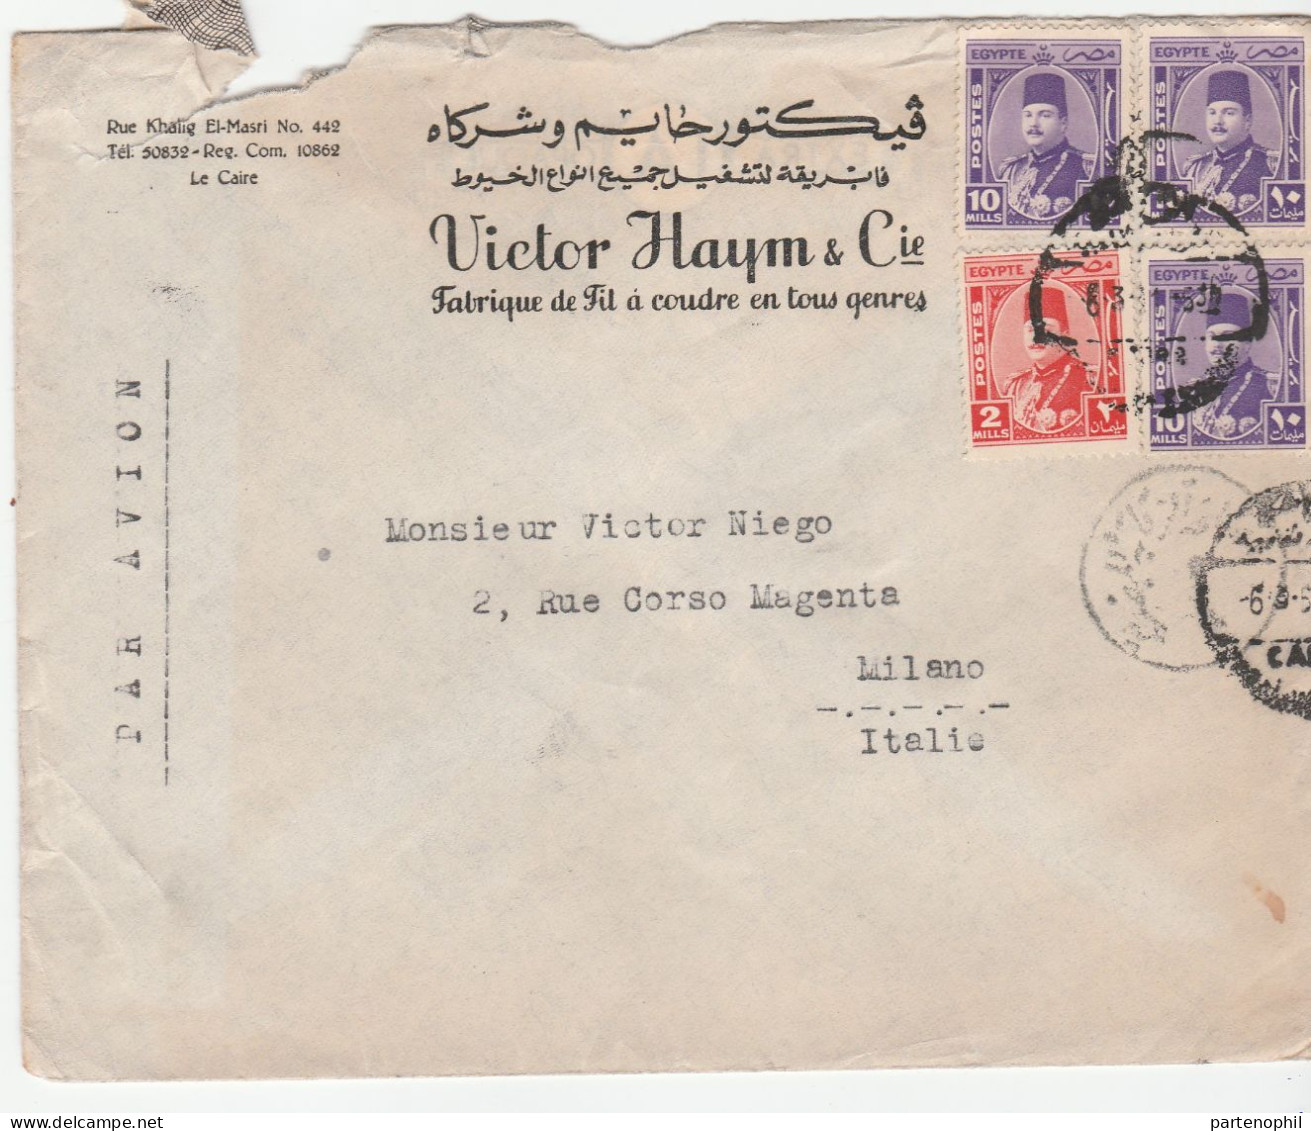 Egypte Aegypthen Egitto 1951  - Postal History  Postgeschichte - Storia Postale - Histoire Postale - Cartas & Documentos